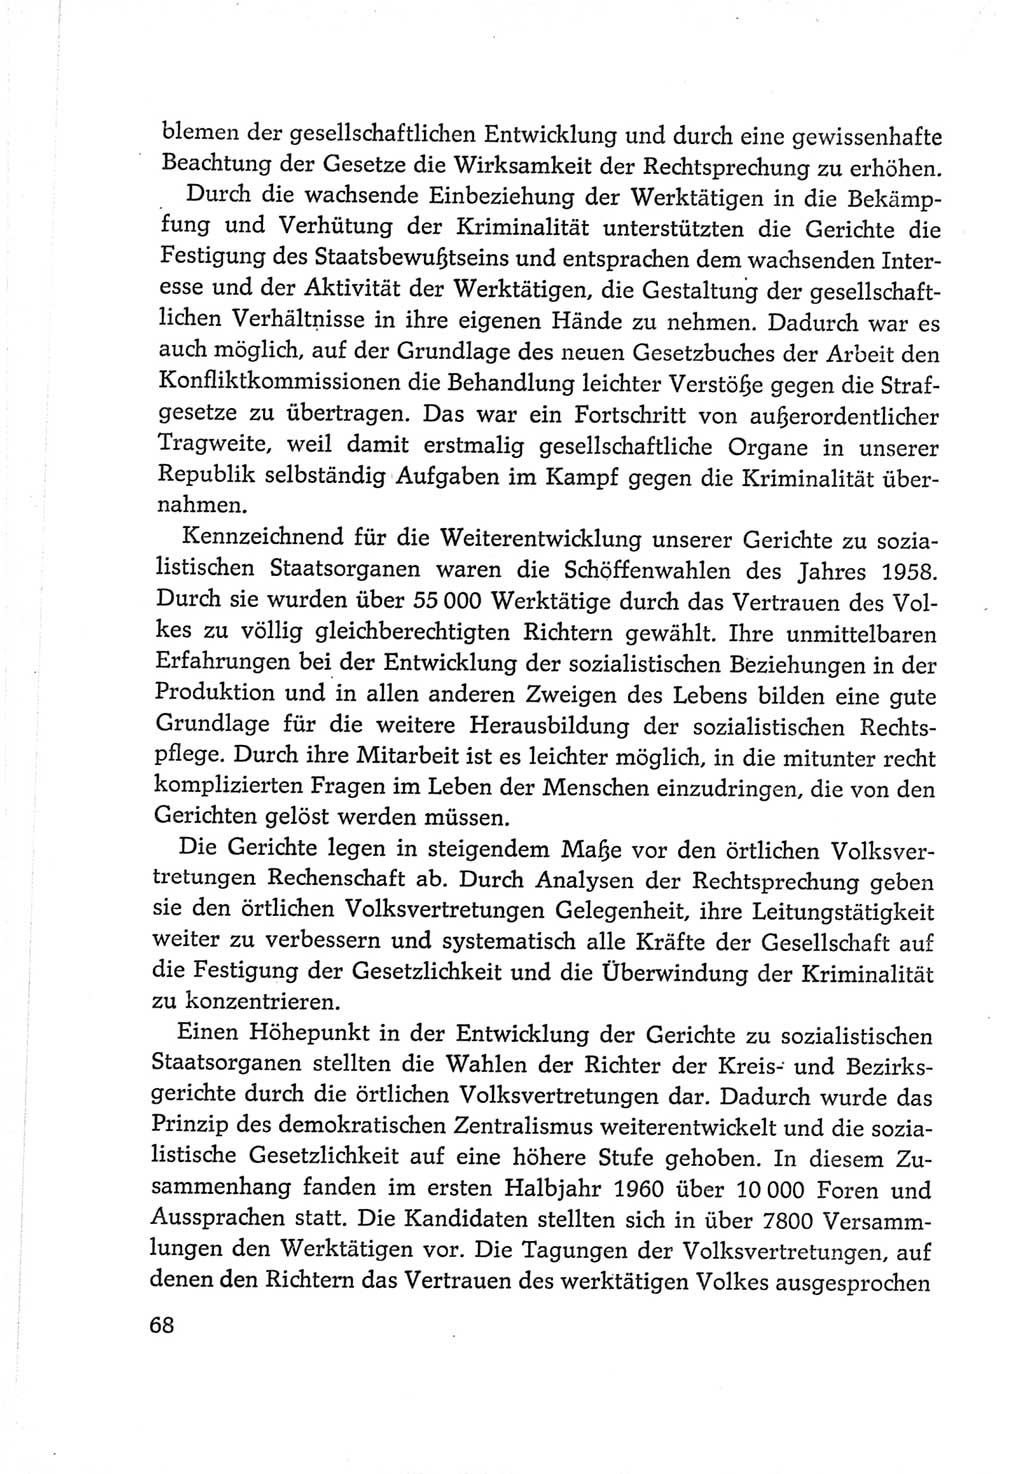 Protokoll der Verhandlungen des Ⅵ. Parteitages der Sozialistischen Einheitspartei Deutschlands (SED) [Deutsche Demokratische Republik (DDR)] 1963, Band Ⅳ, Seite 68 (Prot. Verh. Ⅵ. PT SED DDR 1963, Bd. Ⅳ, S. 68)